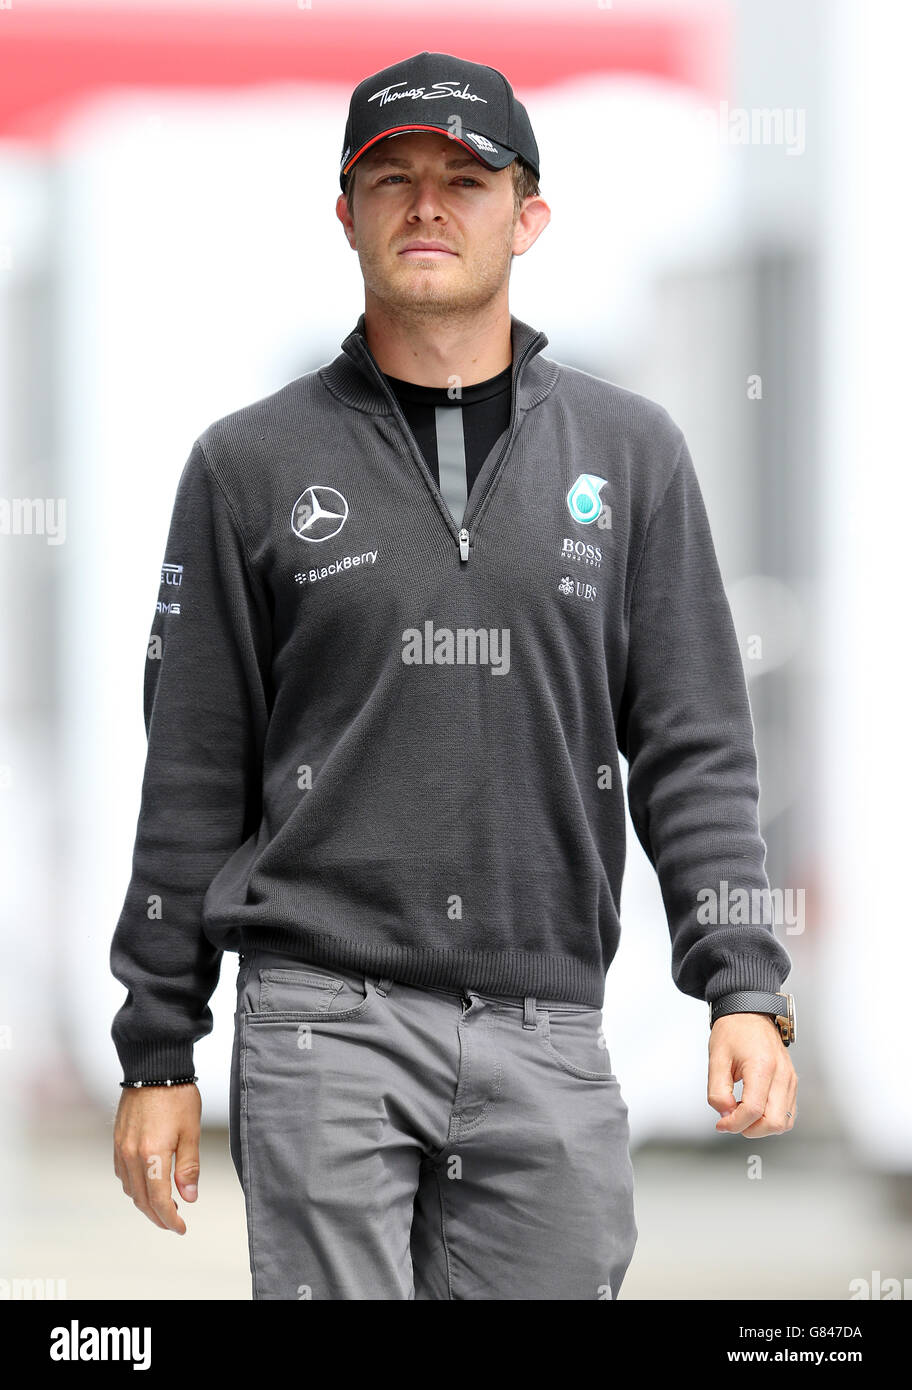 Mercedes Nico Rosberg beim Paddock Day des britischen Grand Prix 2015 auf dem Silverstone Circuit, Towcester. Stockfoto